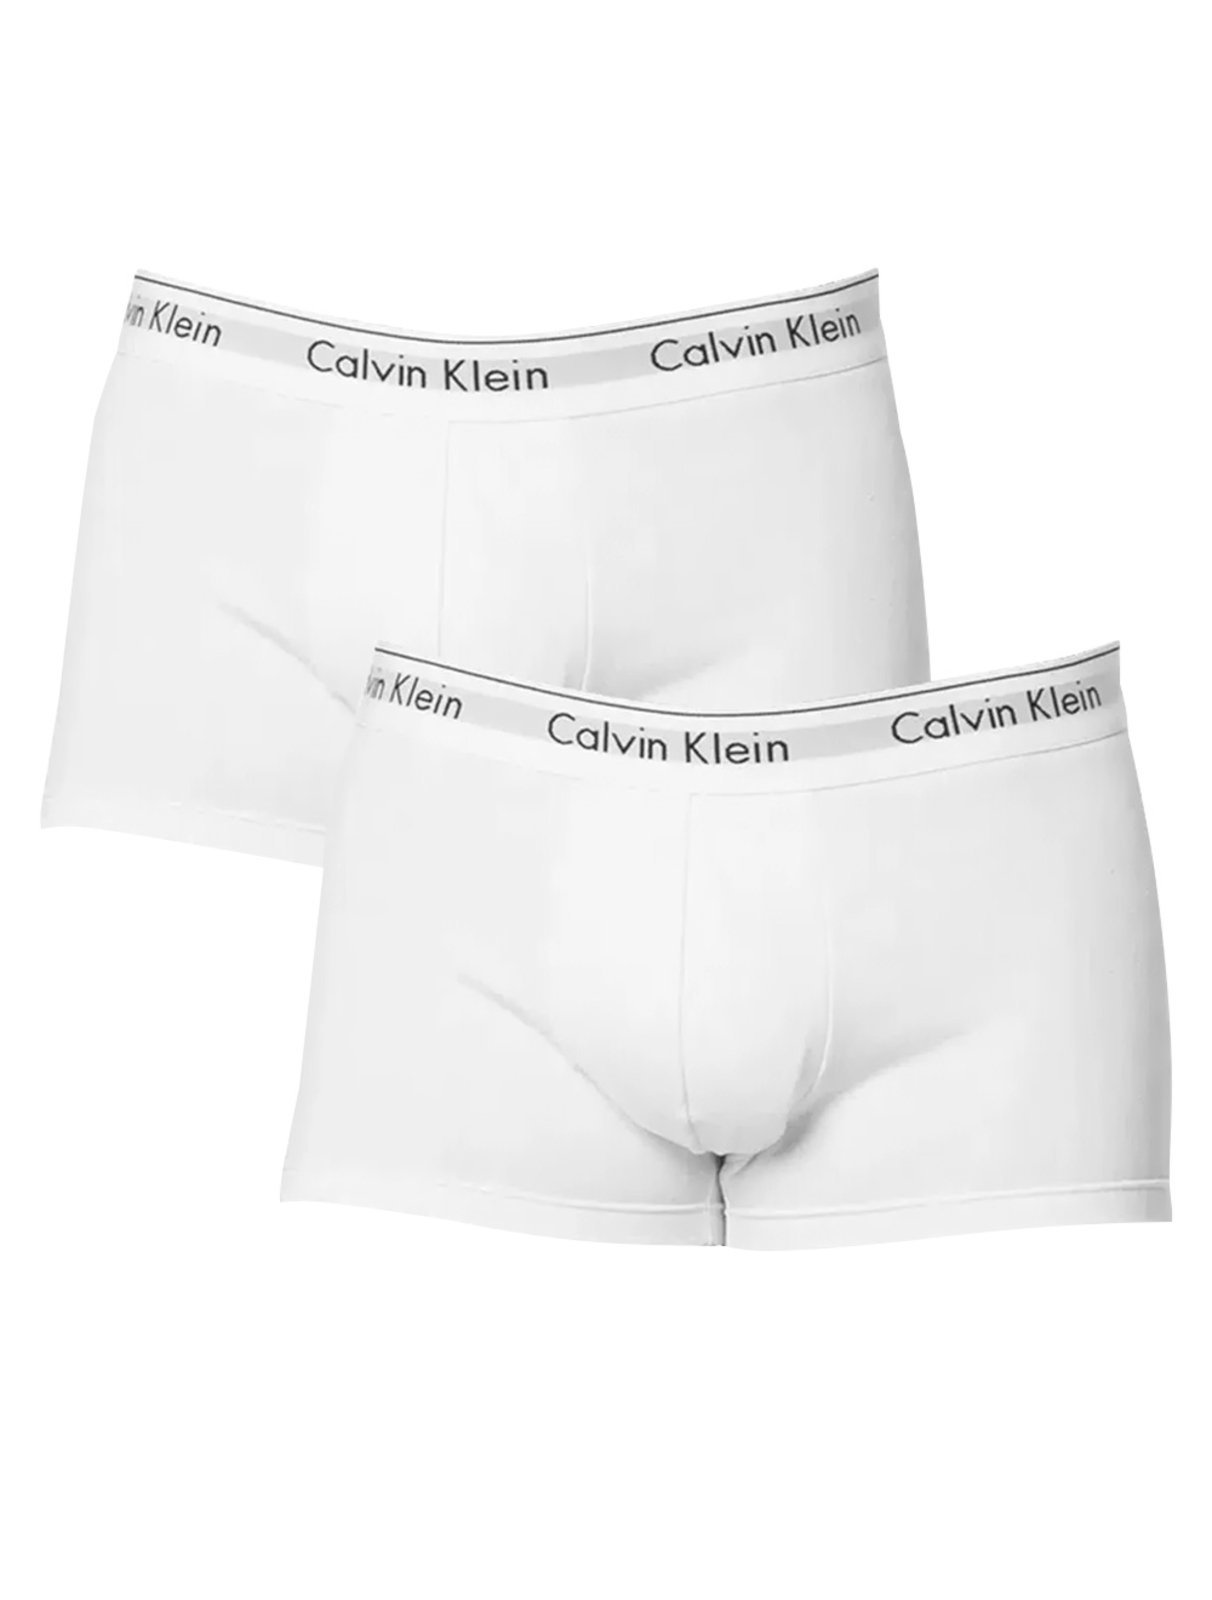 Cuecas Calvin Klein Trunk Modern Cotton Branca Pack 2UN - Compre Agora